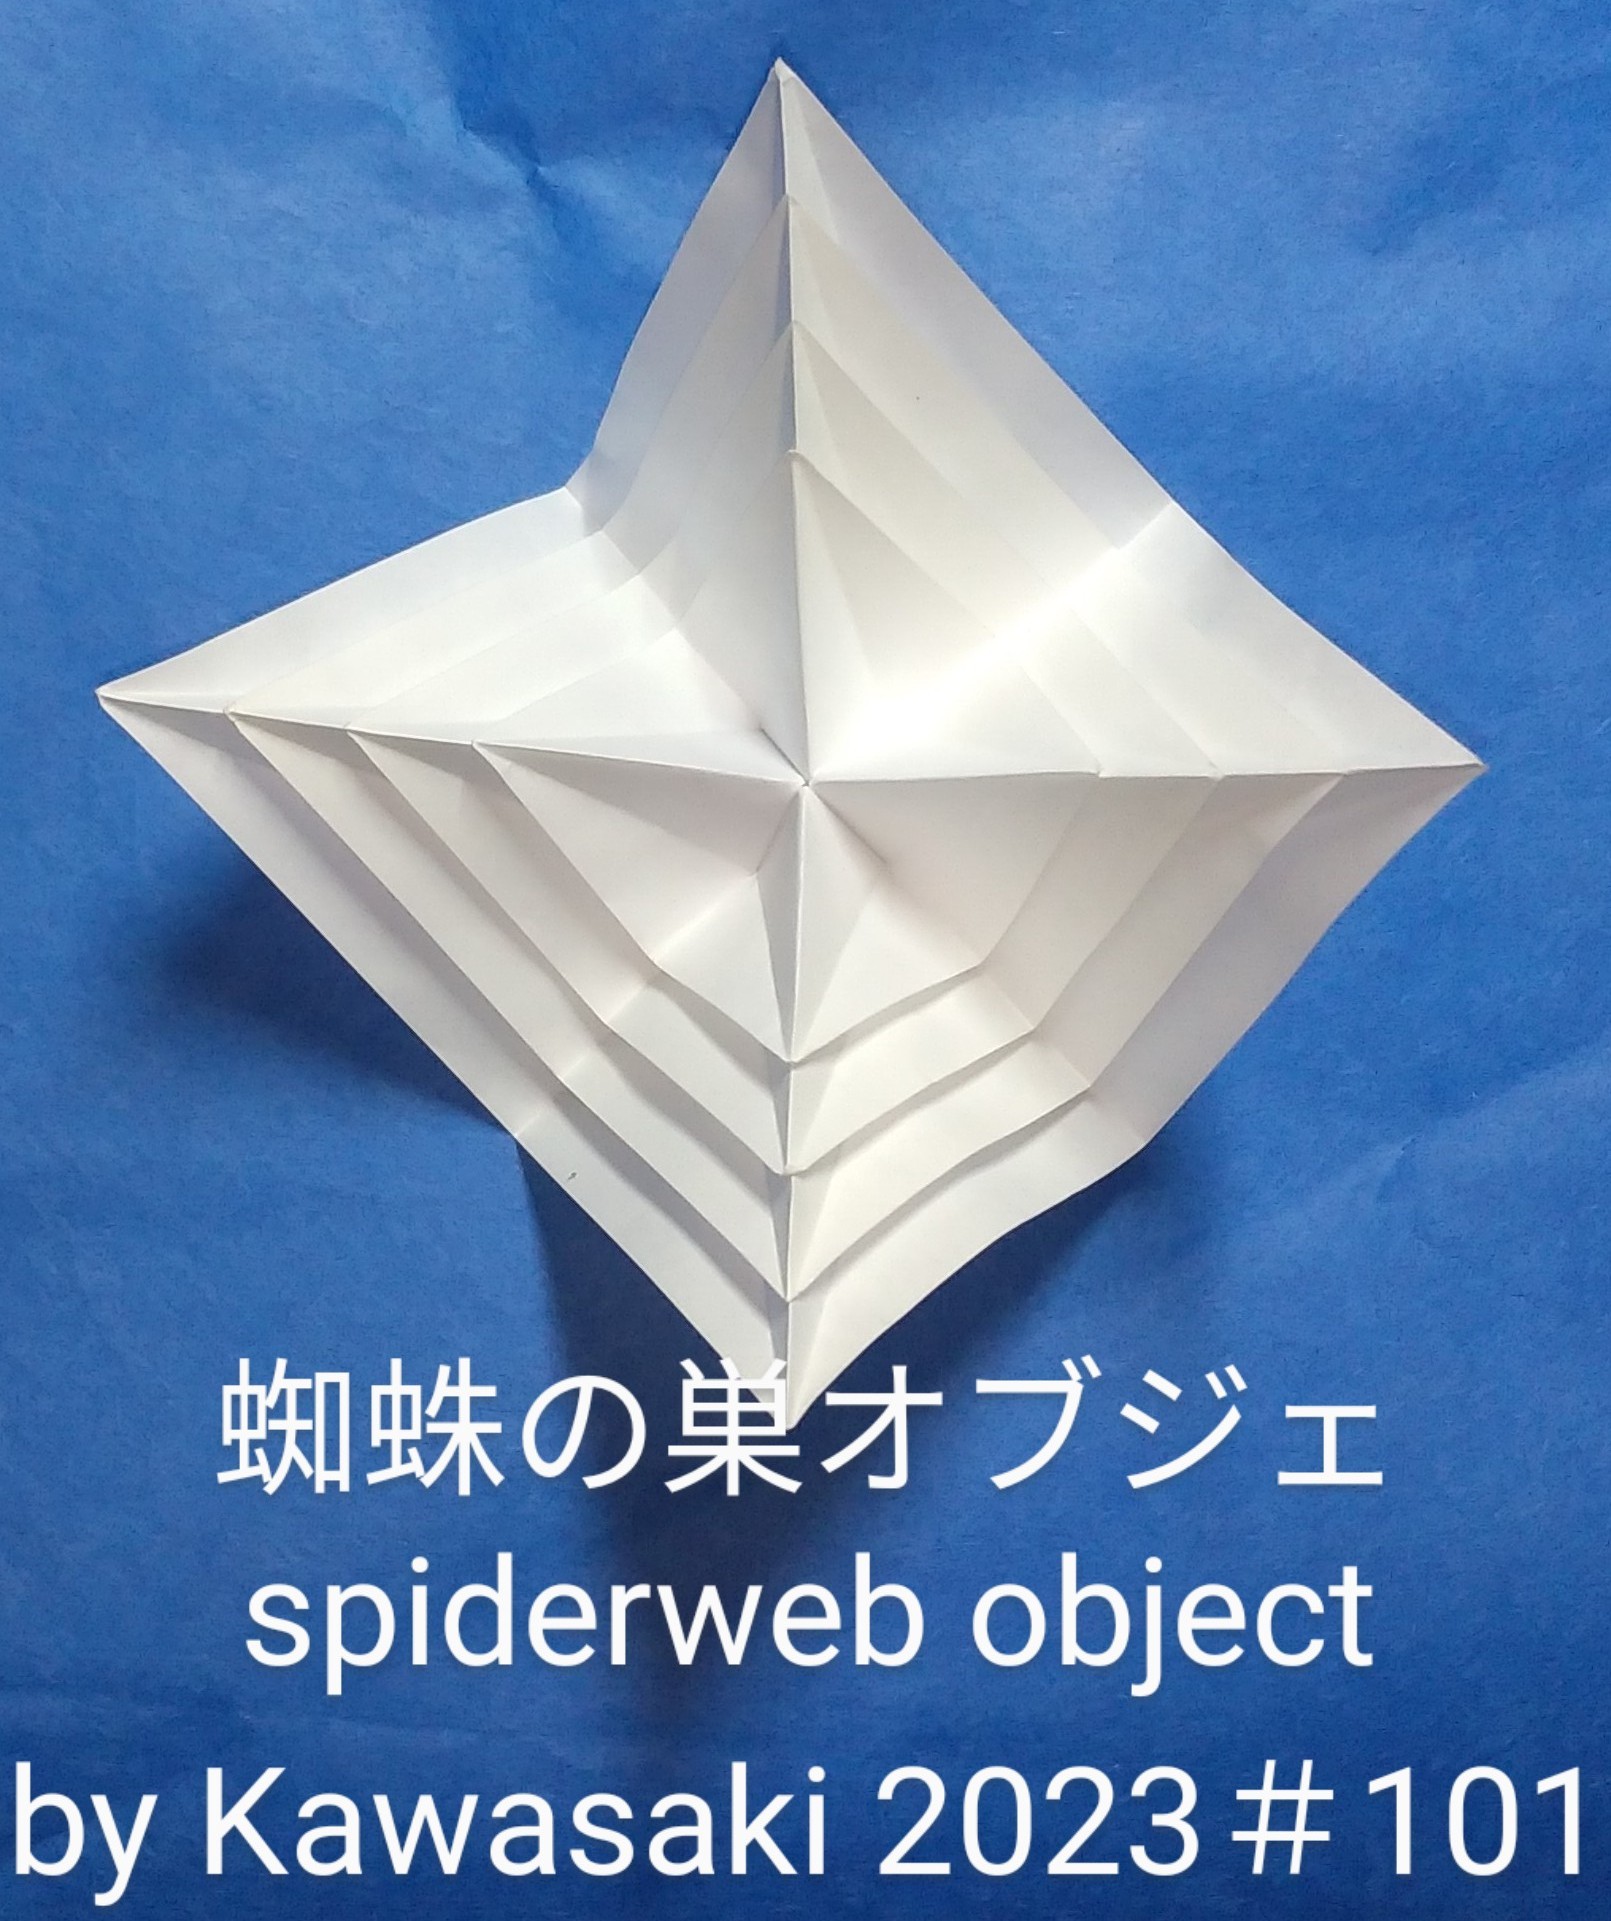 2023/10/21(Sat) 22:28「＃101蜘蛛の巣のオブジェ spiderweb object（2023年10月21日21:59）」川崎敏和 T.Kawasaki
（創作者 Author：川崎敏和 T.Kawasaki,　製作者 Folder：川崎敏和 T.Kawasaki ,　出典 Source：2023年川崎敏和折り紙キット＃101）
 ＃100新蜘蛛の巣の基本構造を表現しました。パーツは単純ですが、これまでの蜘蛛の巣同様に組むときの折り目合わせの精度が求められる【組み★★★】です。深海CUBEのように配色も楽しめます。